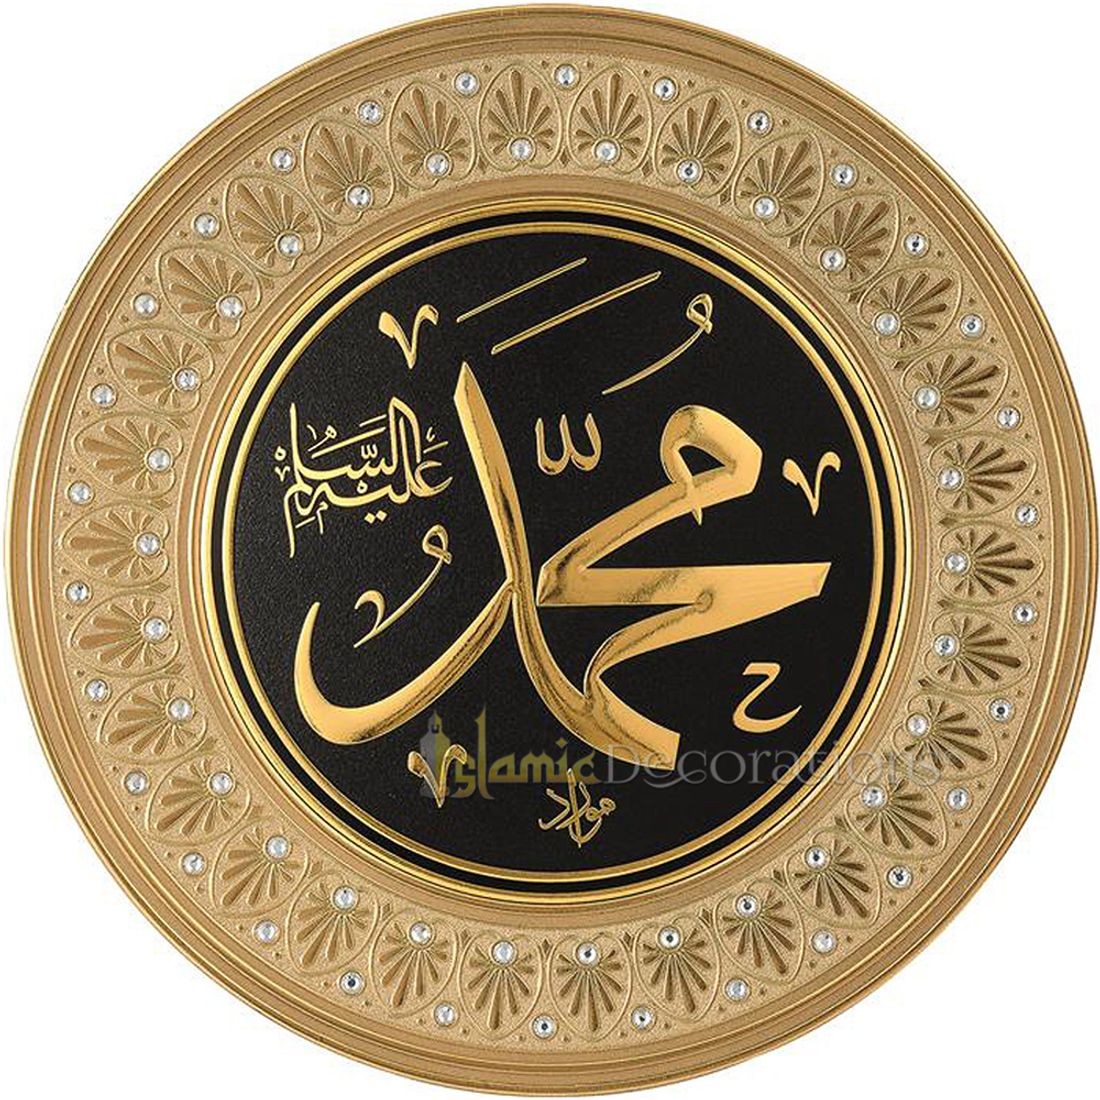 Cetakan Bulat Emas 16-1/2 pada Piring Pajangan Muhammad-Seni Kaligrafi Islam